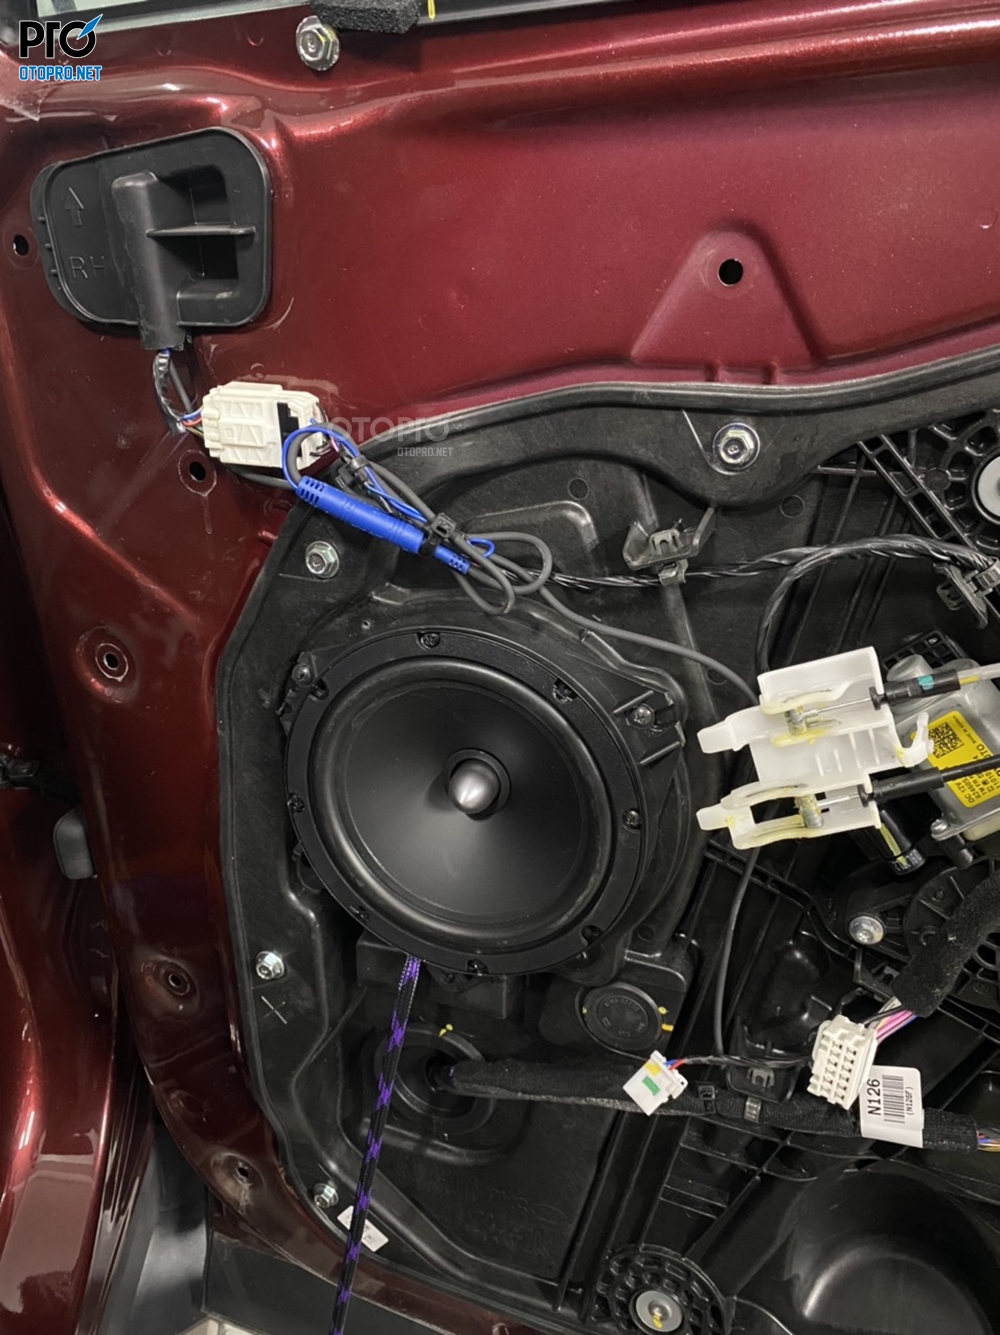 Độ loa Hyundai Santafe 2020 với cấu hình âm thanh loa Focal RSE RCX 165 